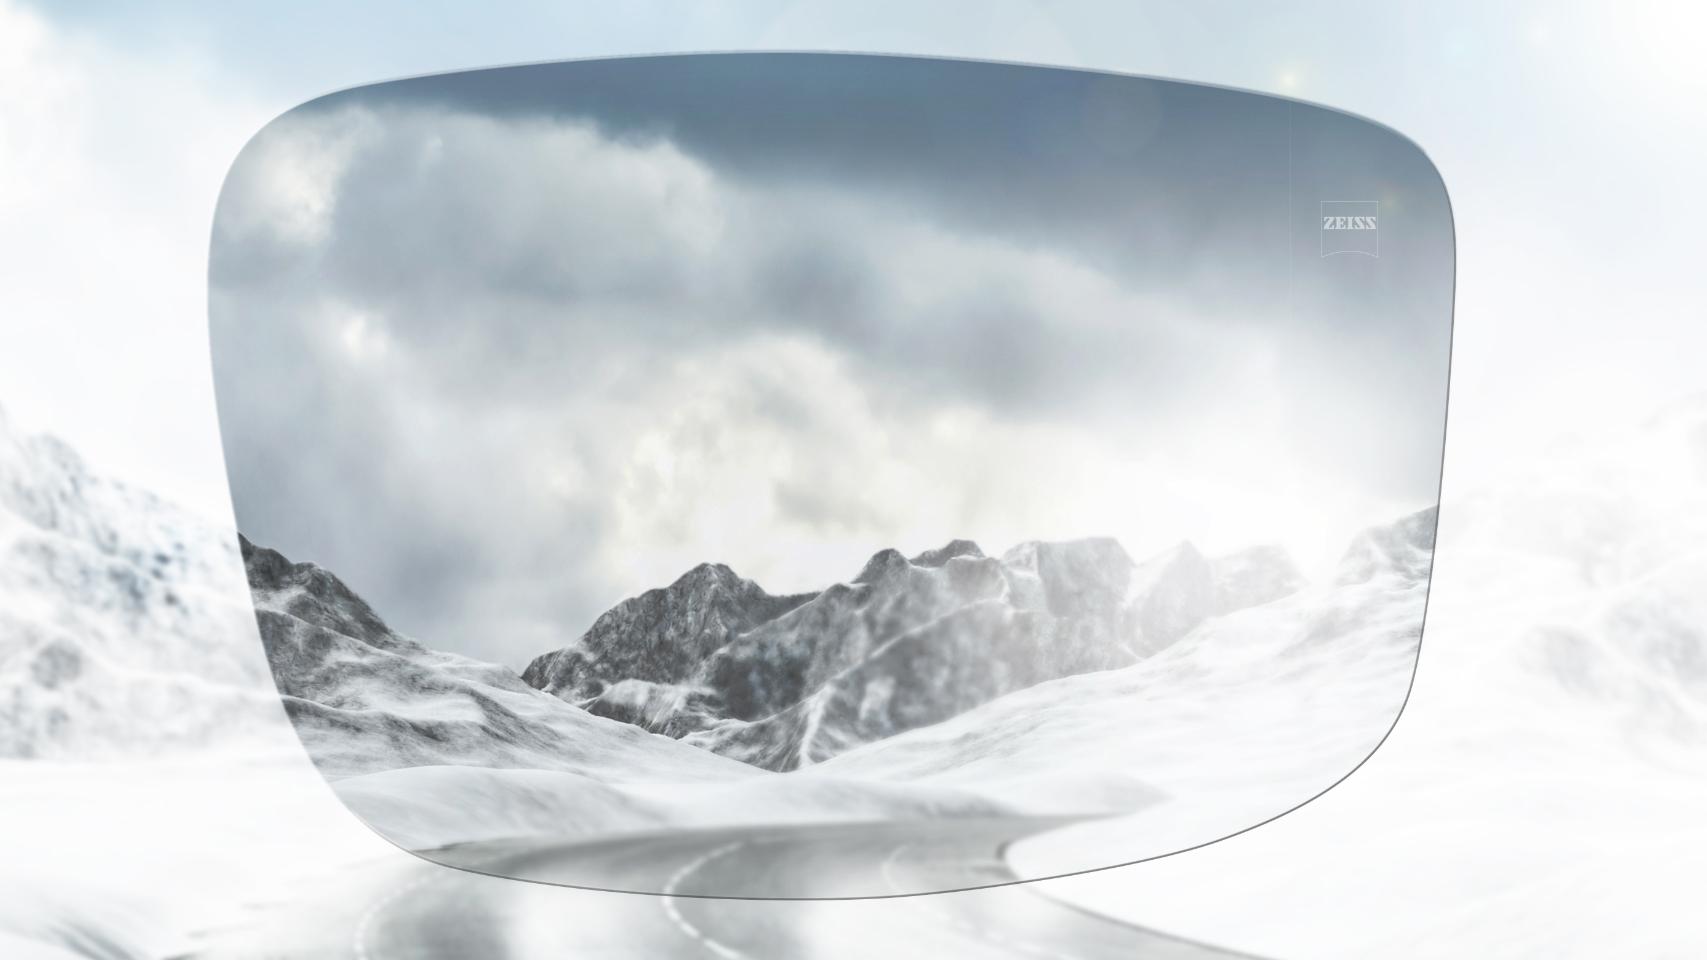 Vista de uma estrada em uma montanha coberta de neve com e sem óculos polarizados. Com óculos de sol polarizados, o ofuscamento é reduzido e a visão fica muito mais nítida.